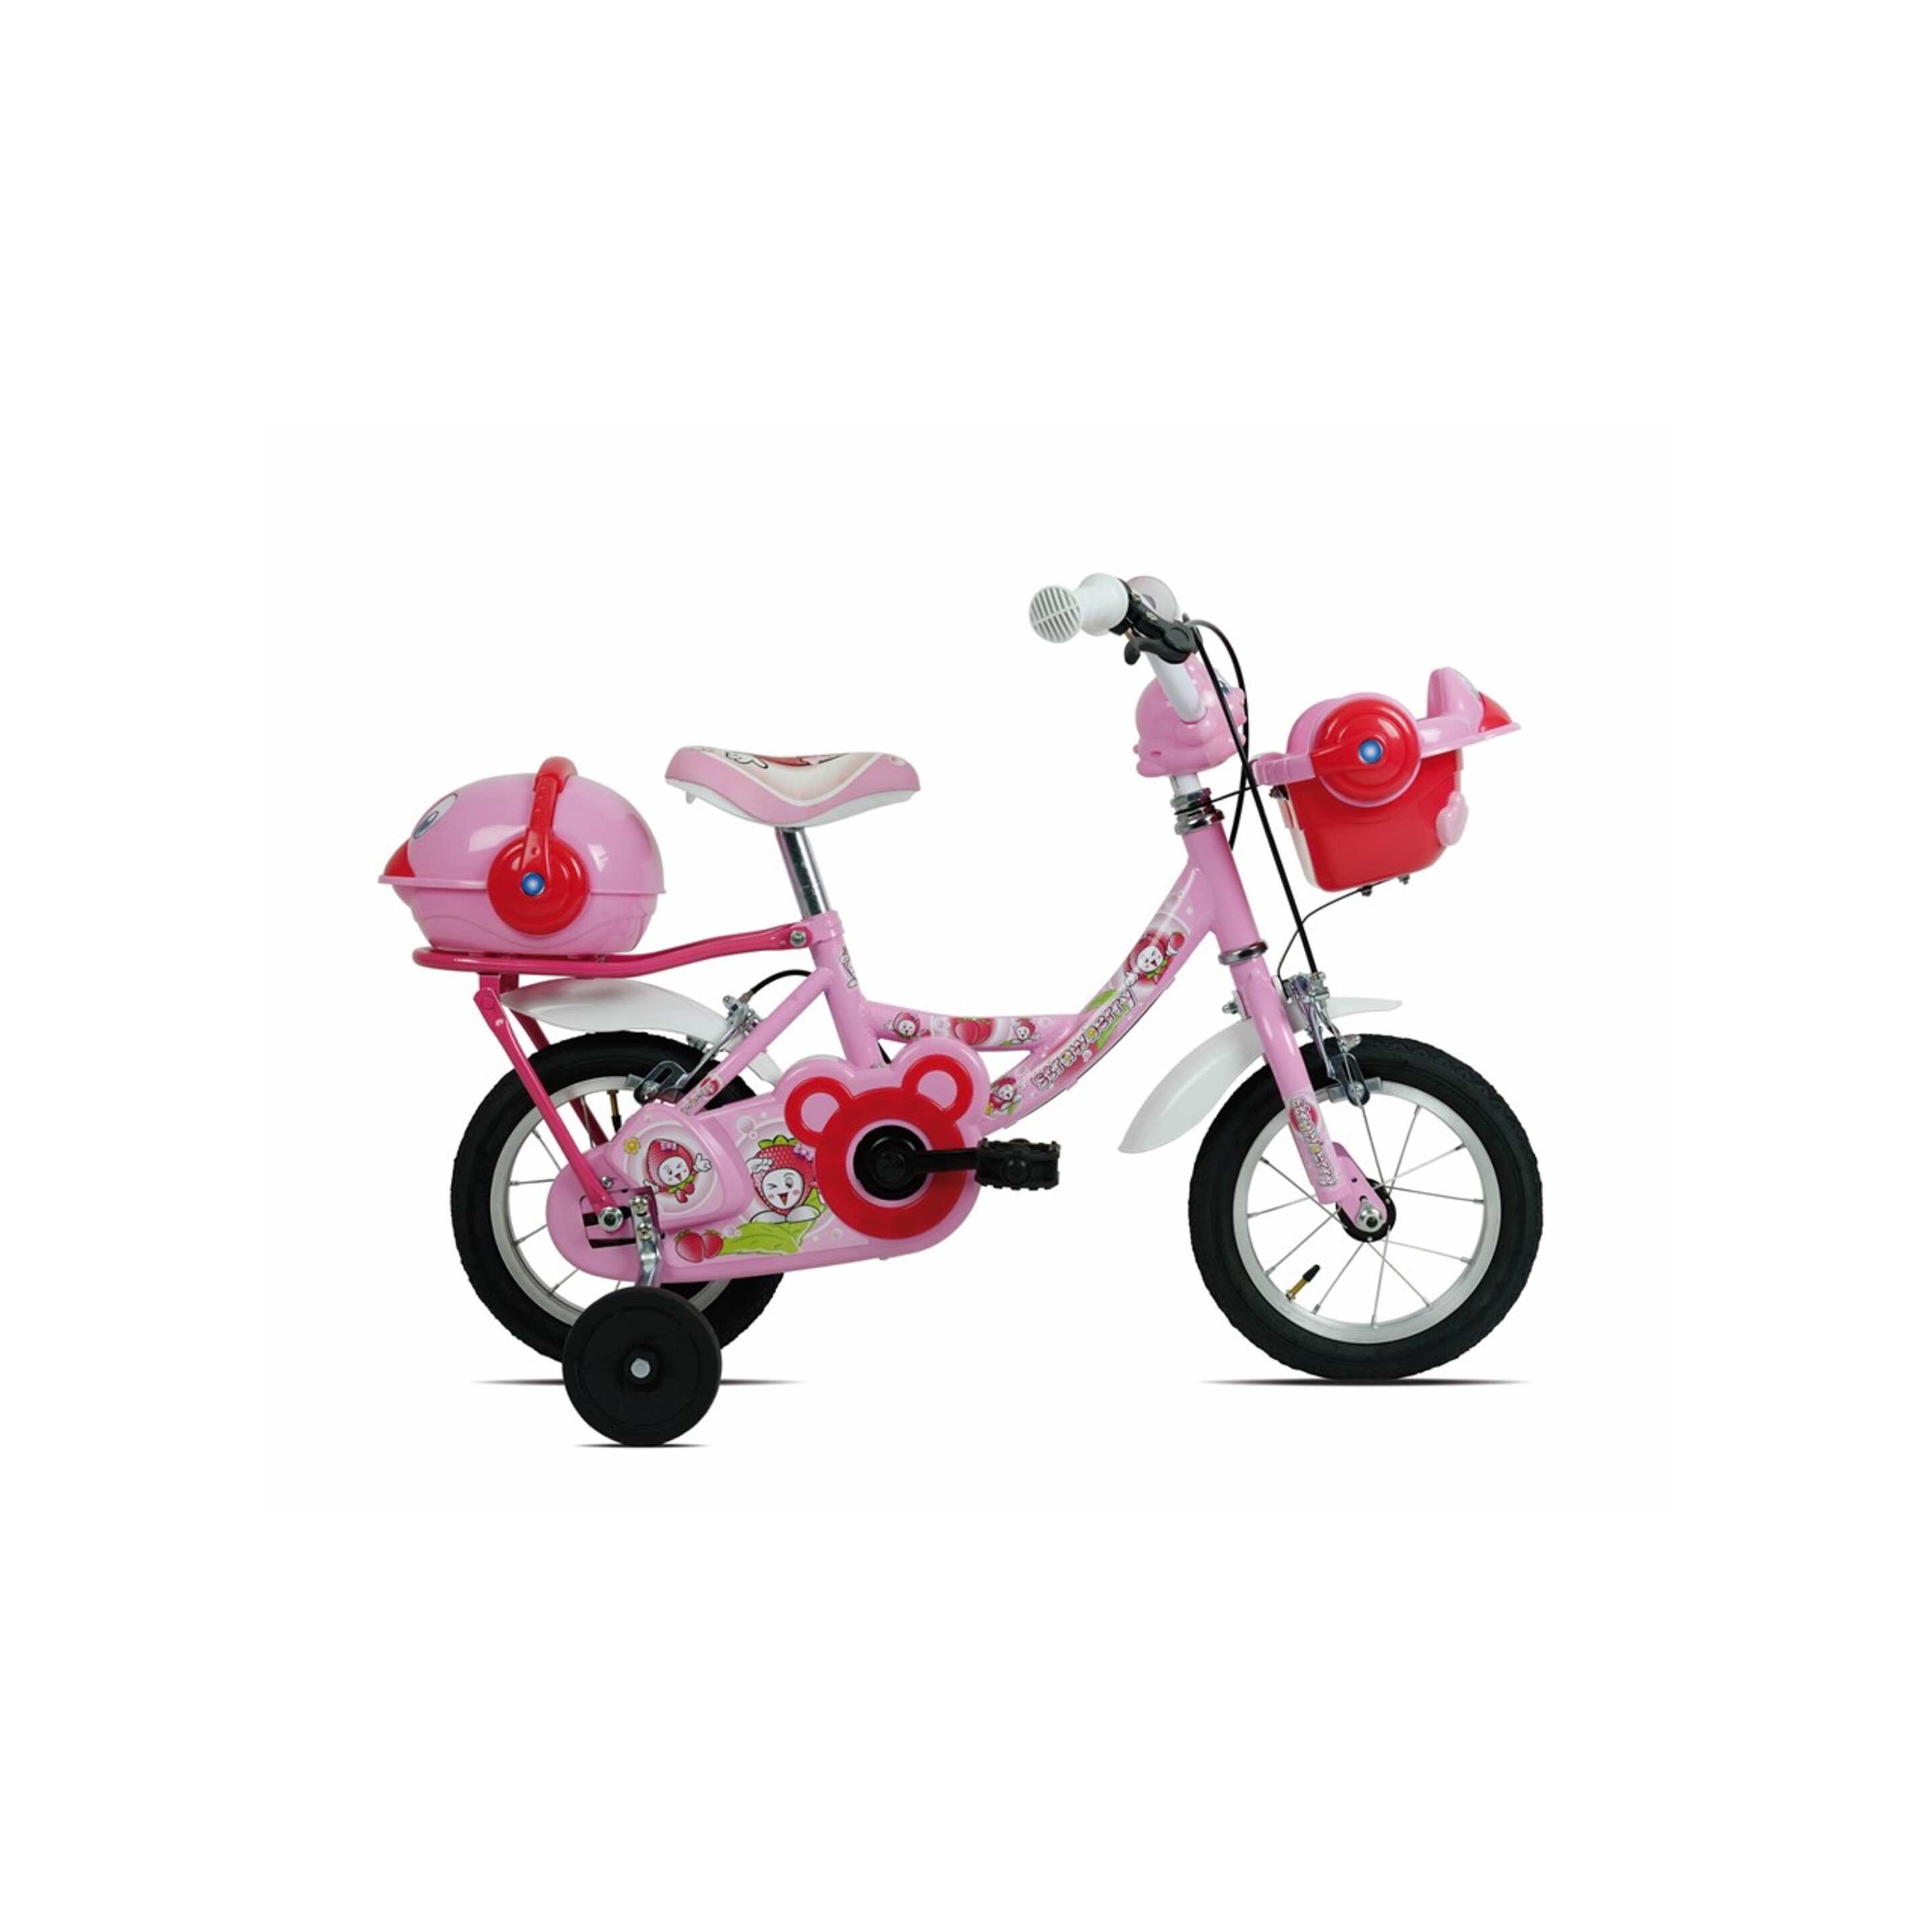 Bicicleta Esperia Game Boy 9770 14" 1v - rosa - 